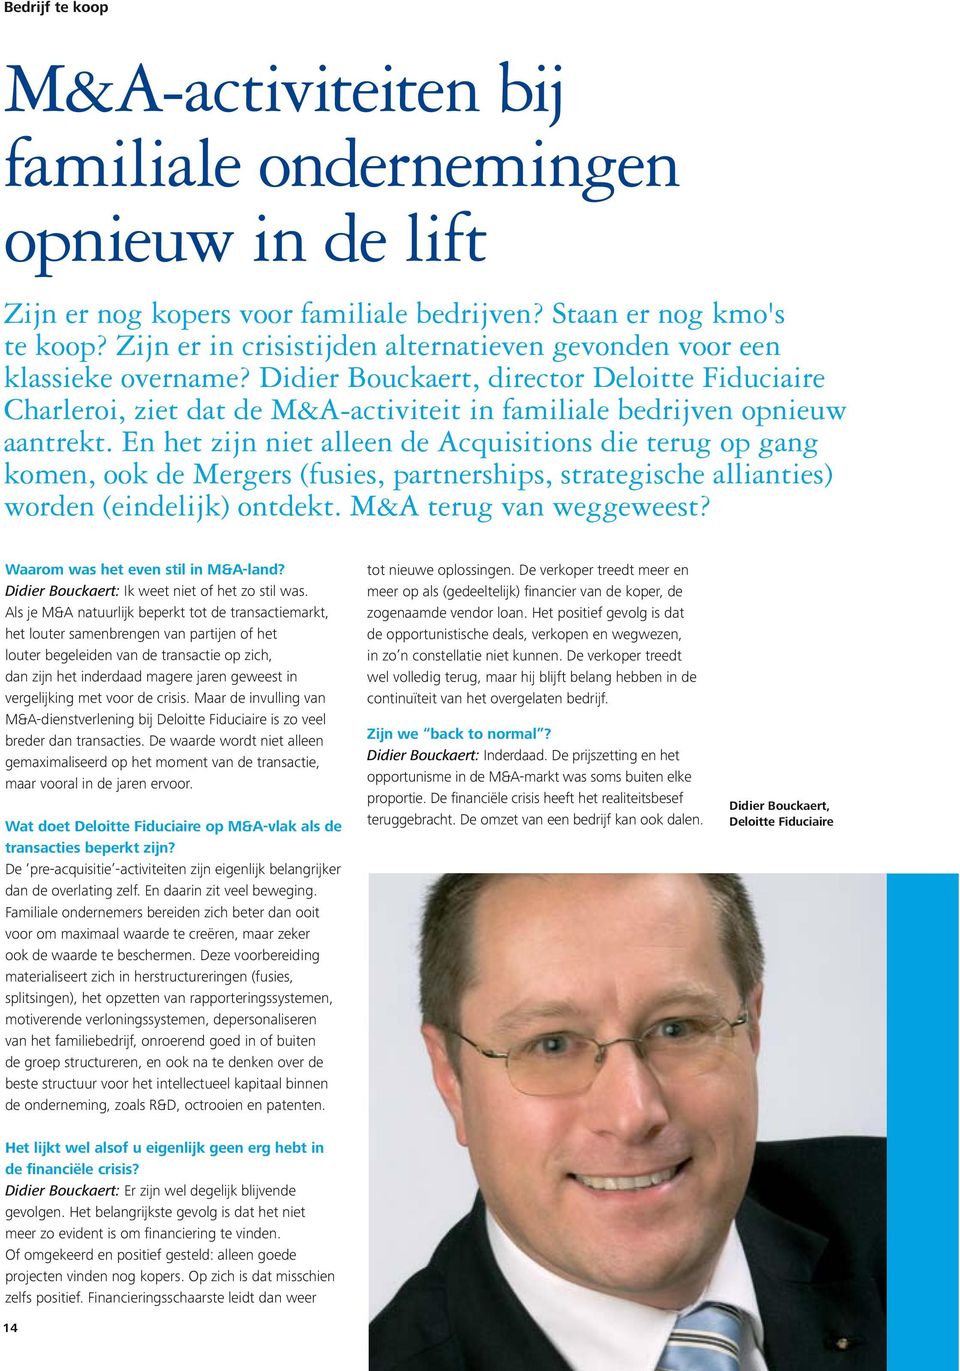 Didier Bouckaert, director Deloitte Fiduciaire Charleroi, ziet dat de M&A-activiteit in familiale bedrijven opnieuw aantrekt.